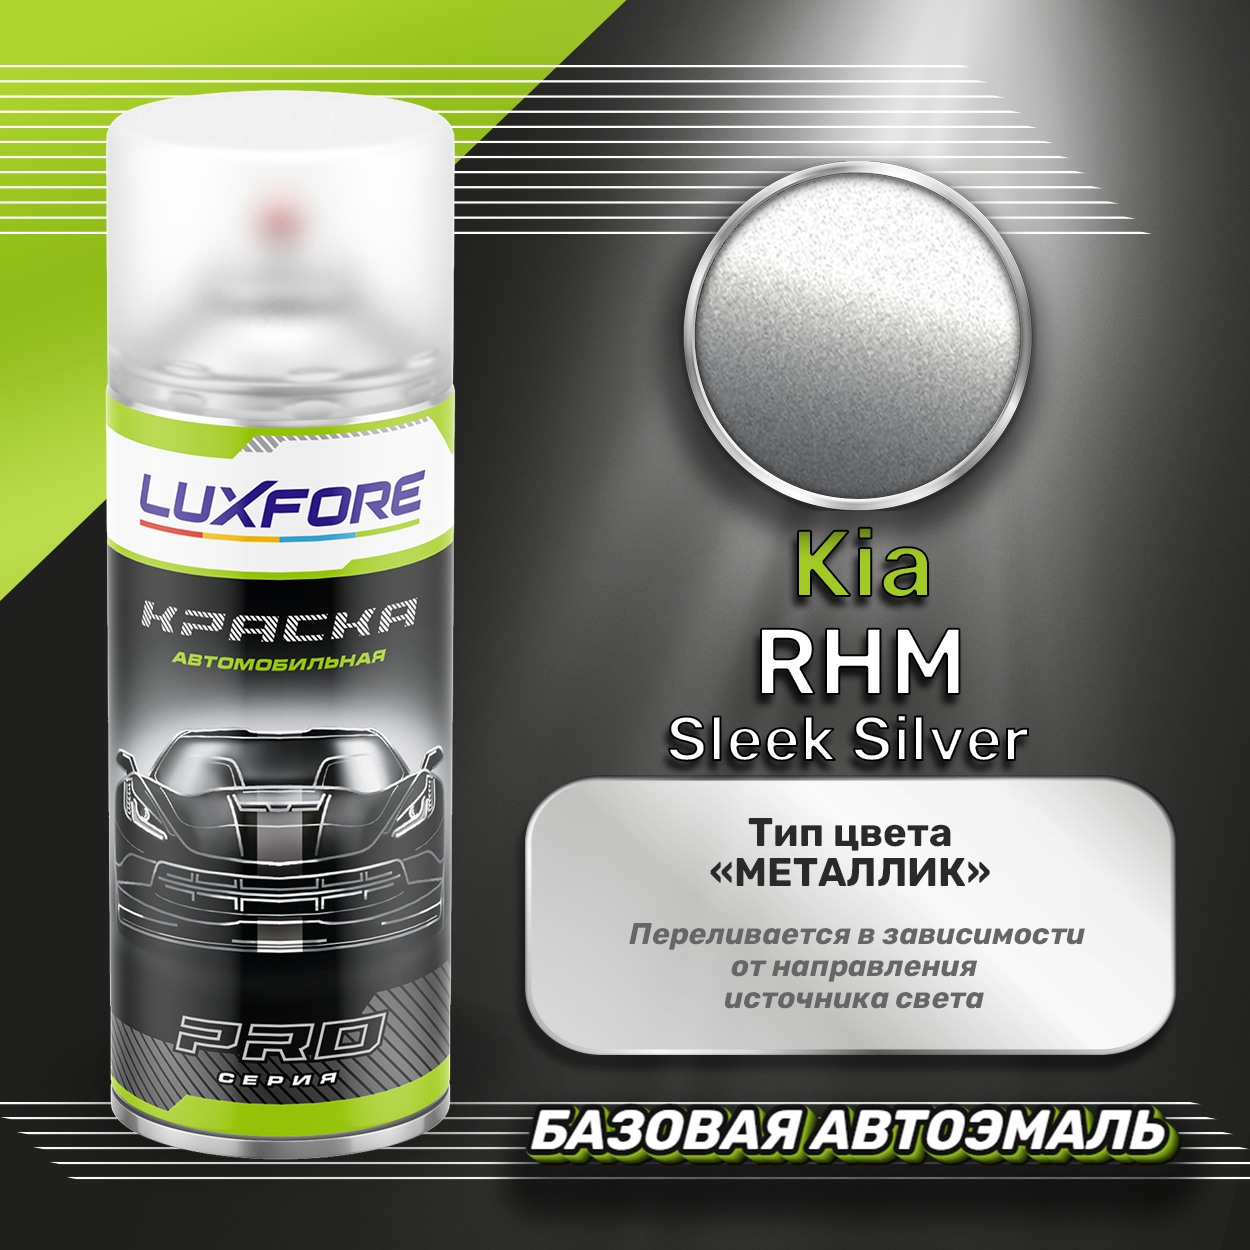 Luxfore аэрозольная краска Kia RHM Sleek Silver 400 мл